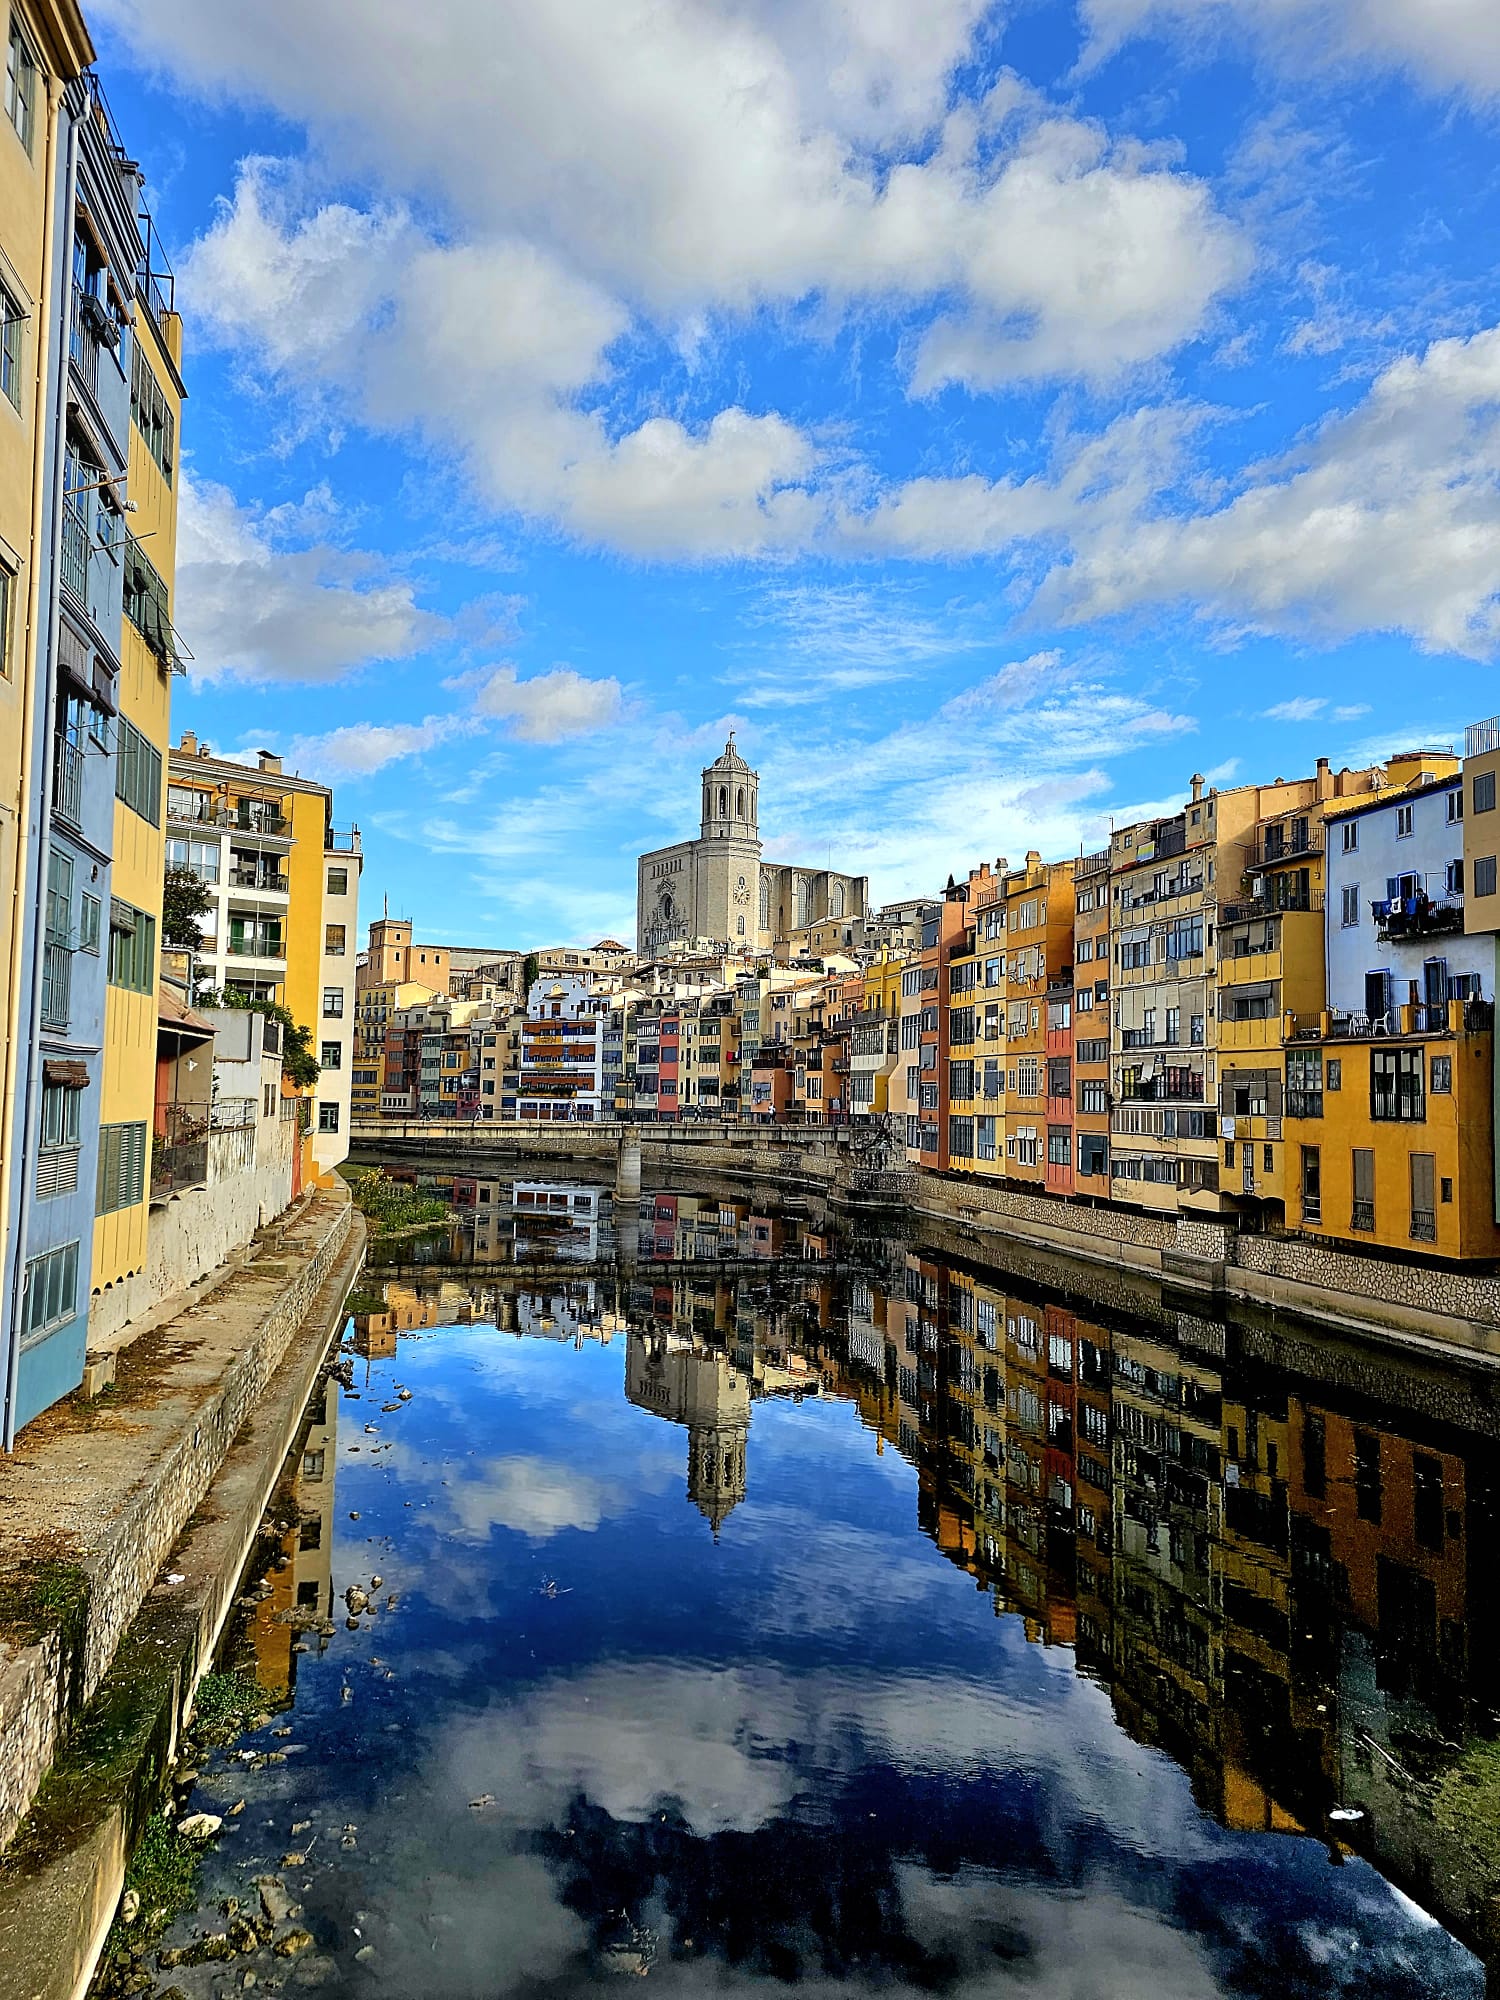 Girona city center, Catalonia, Spain